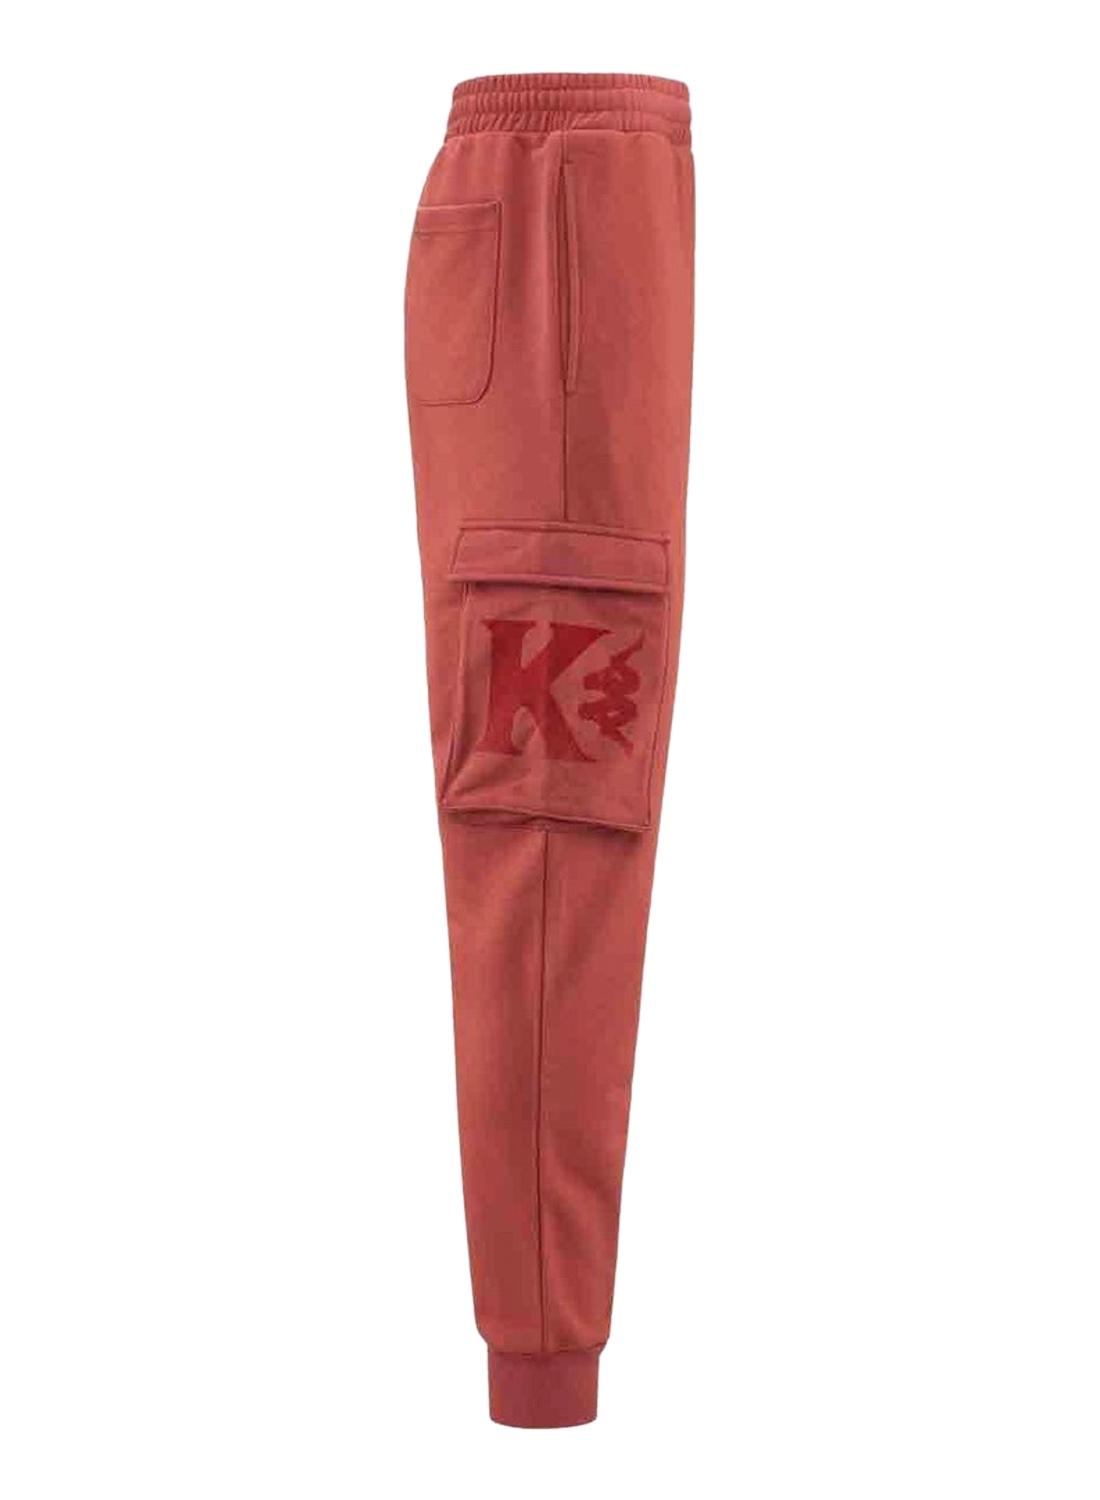 Pantalón Kappa Vuklo Cargo para Hombre Granate